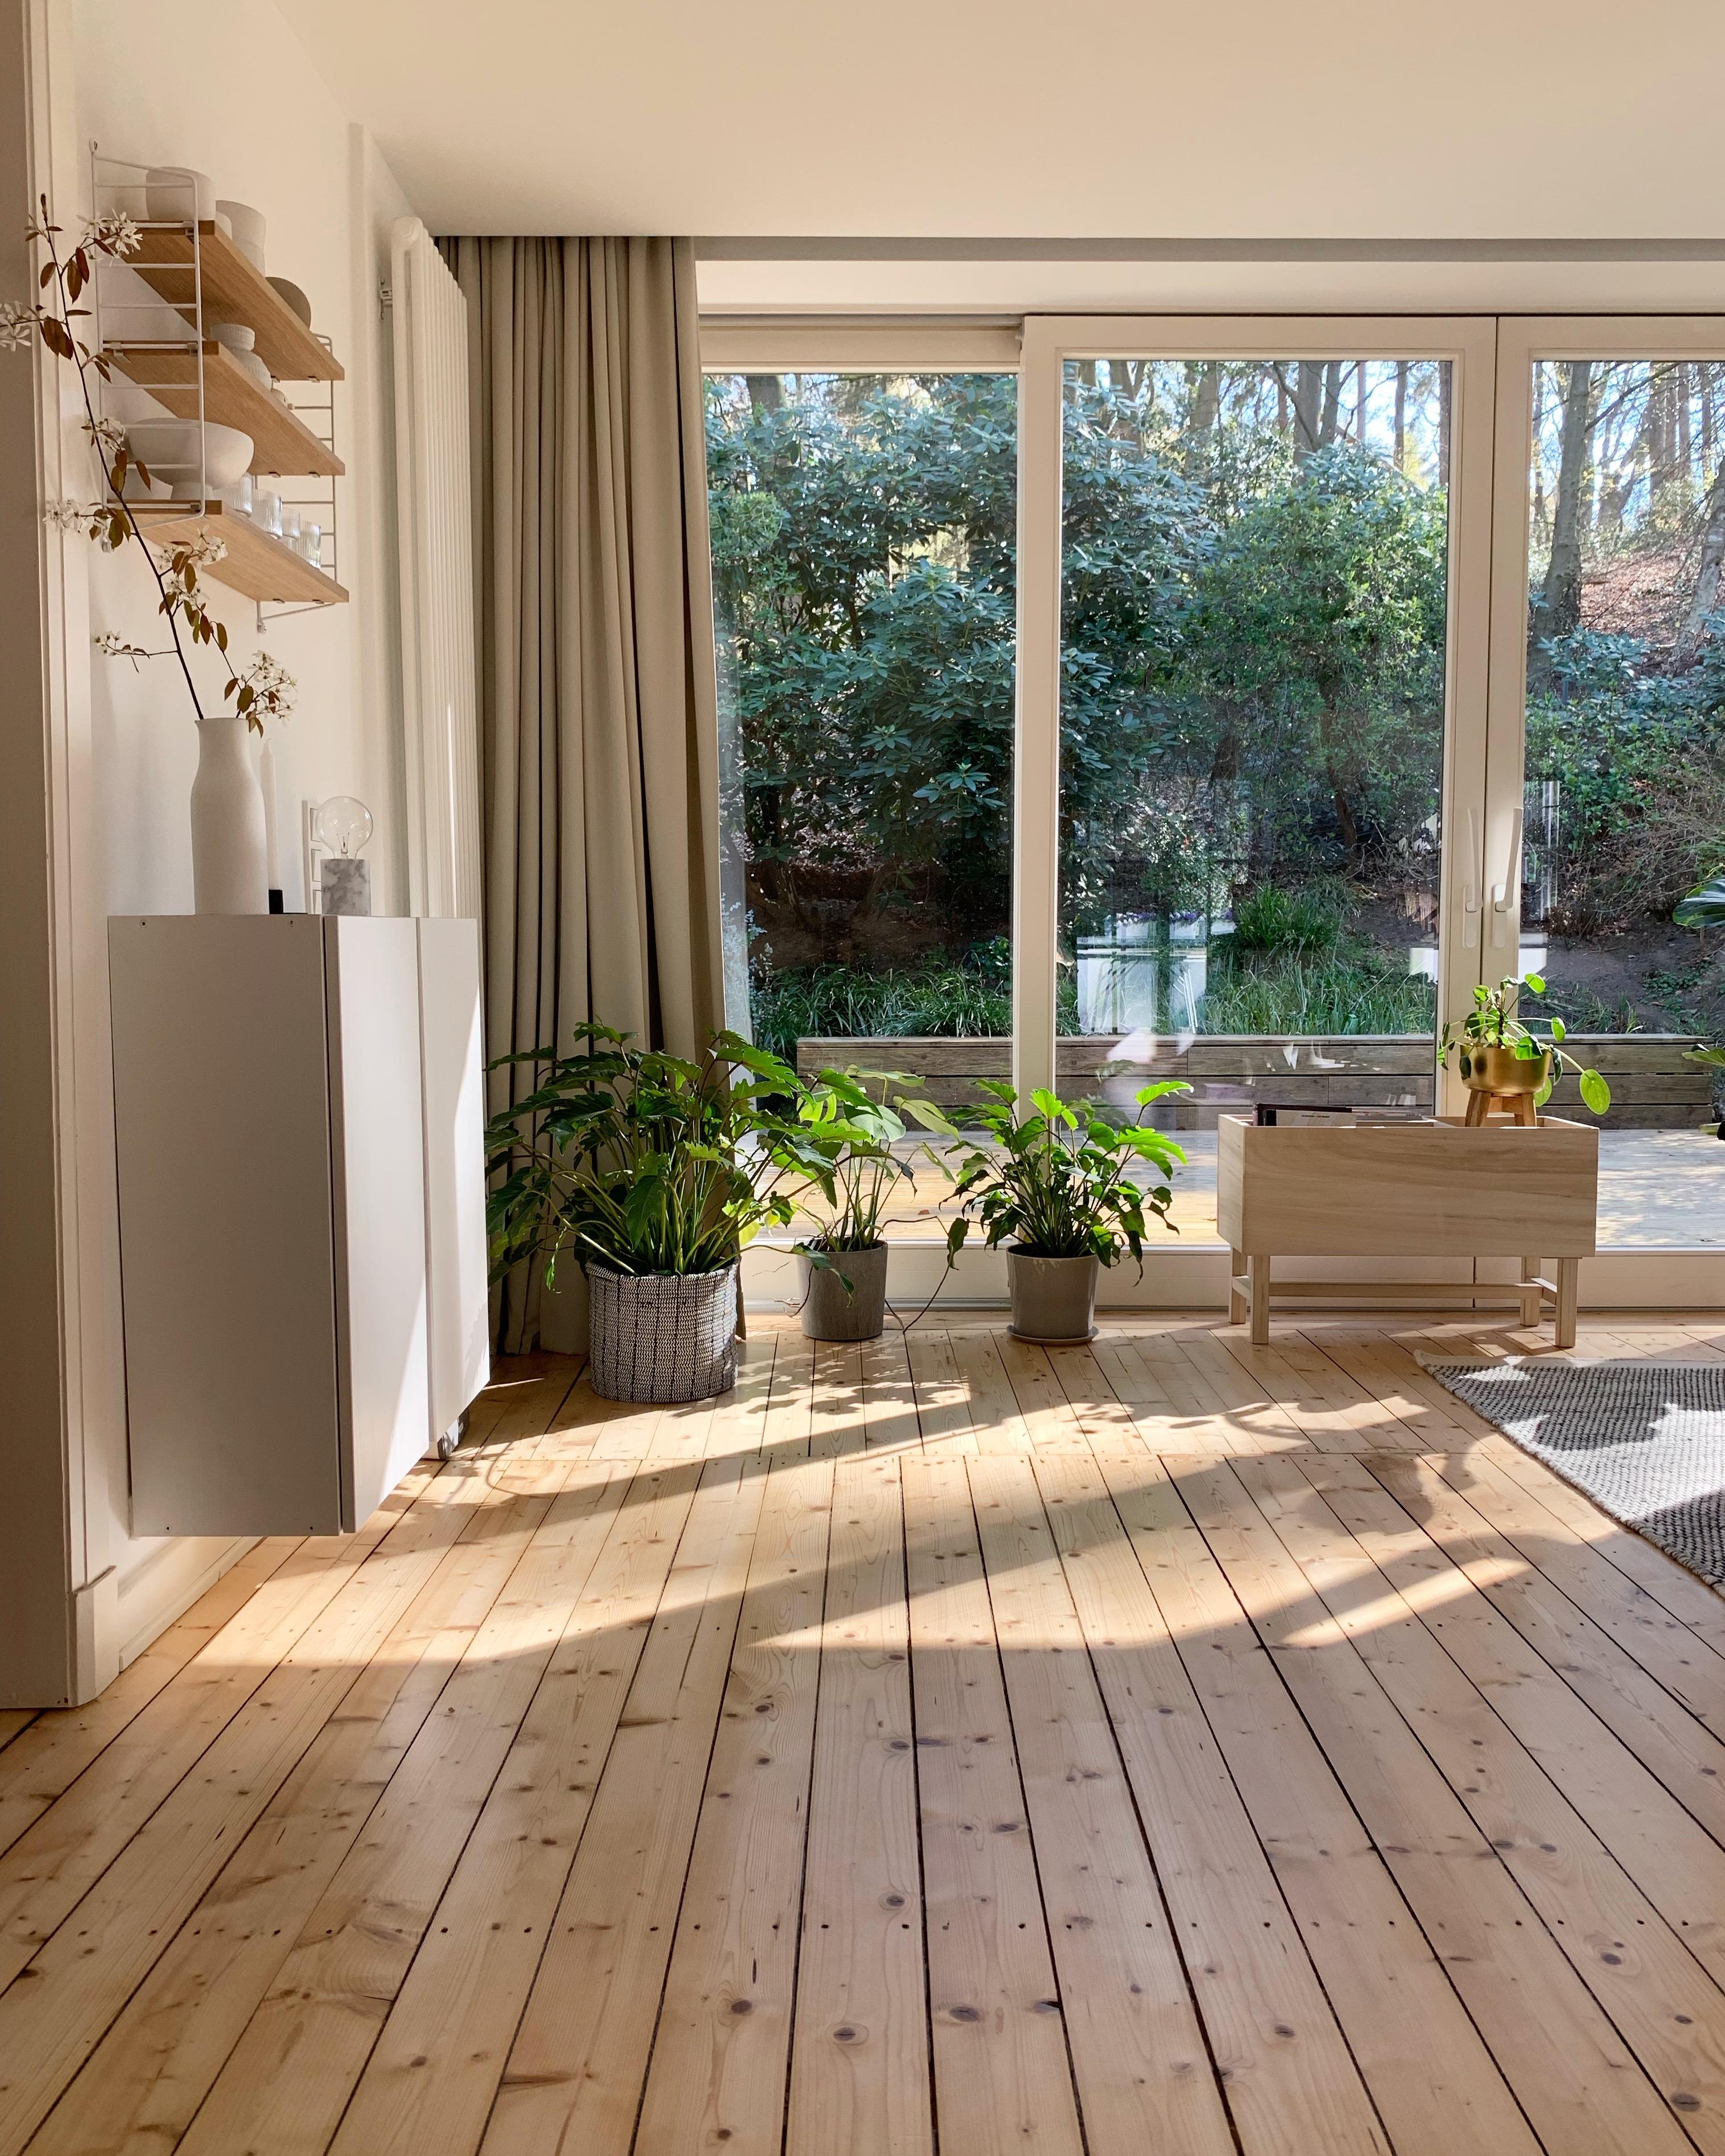 Endlich wieder #sonne ☀️. #wohnzimmer #ausblick #skandinavischwohnen